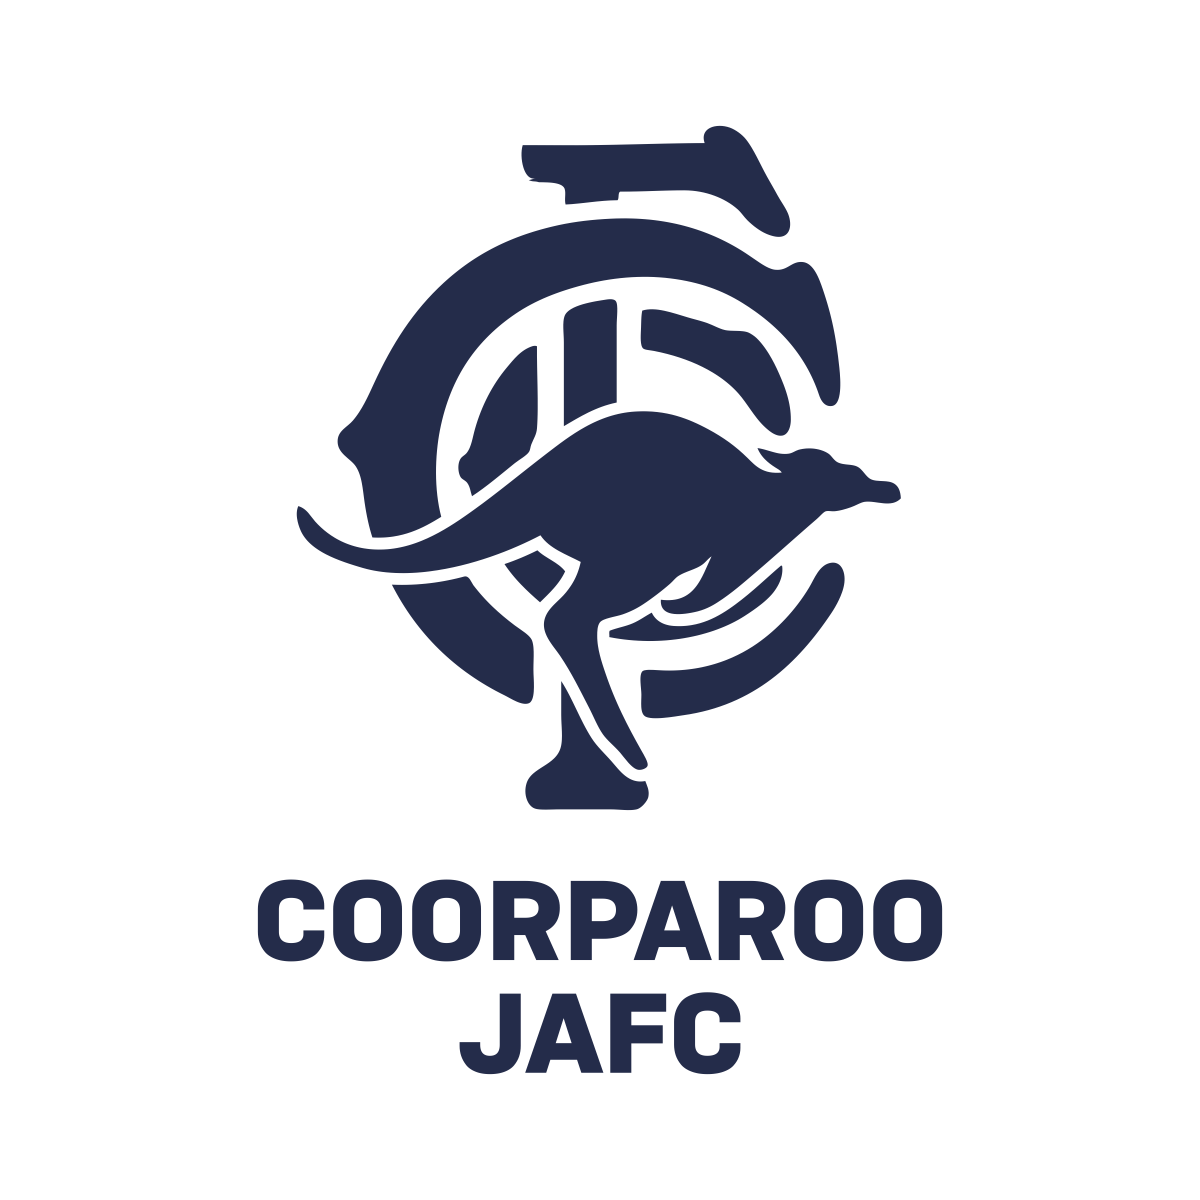 Coorparoo Junior AFC